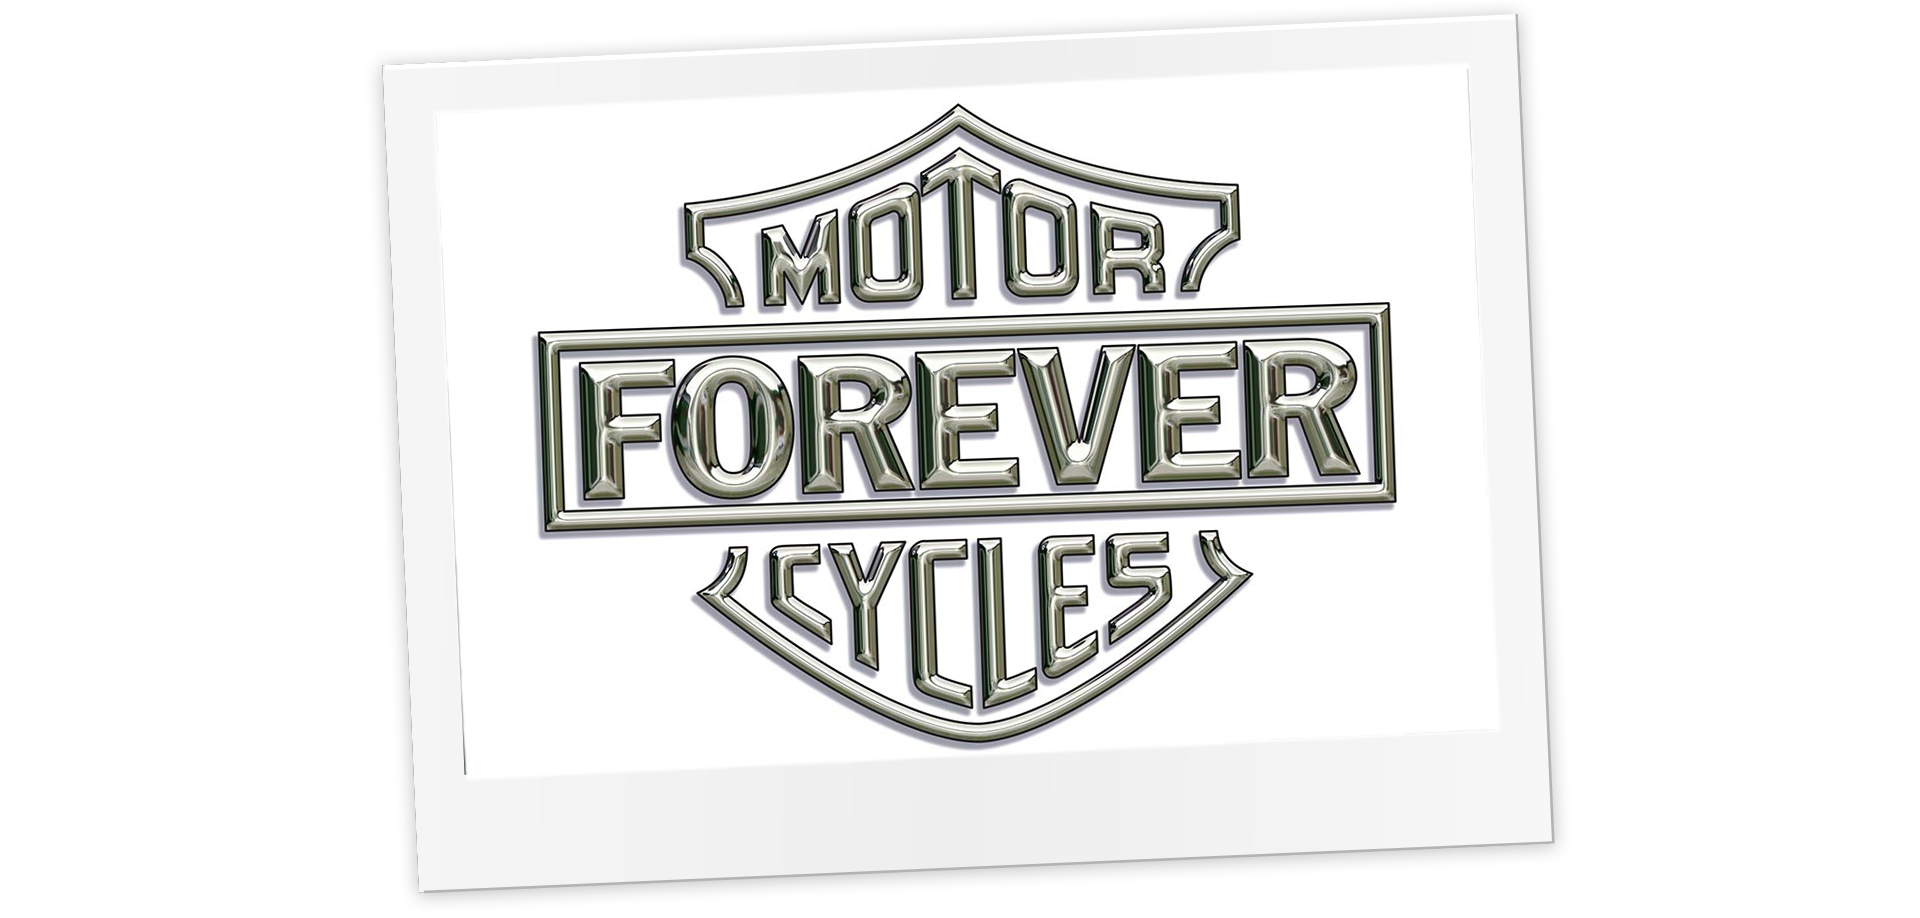 McCann's Motorcycles Forever logo